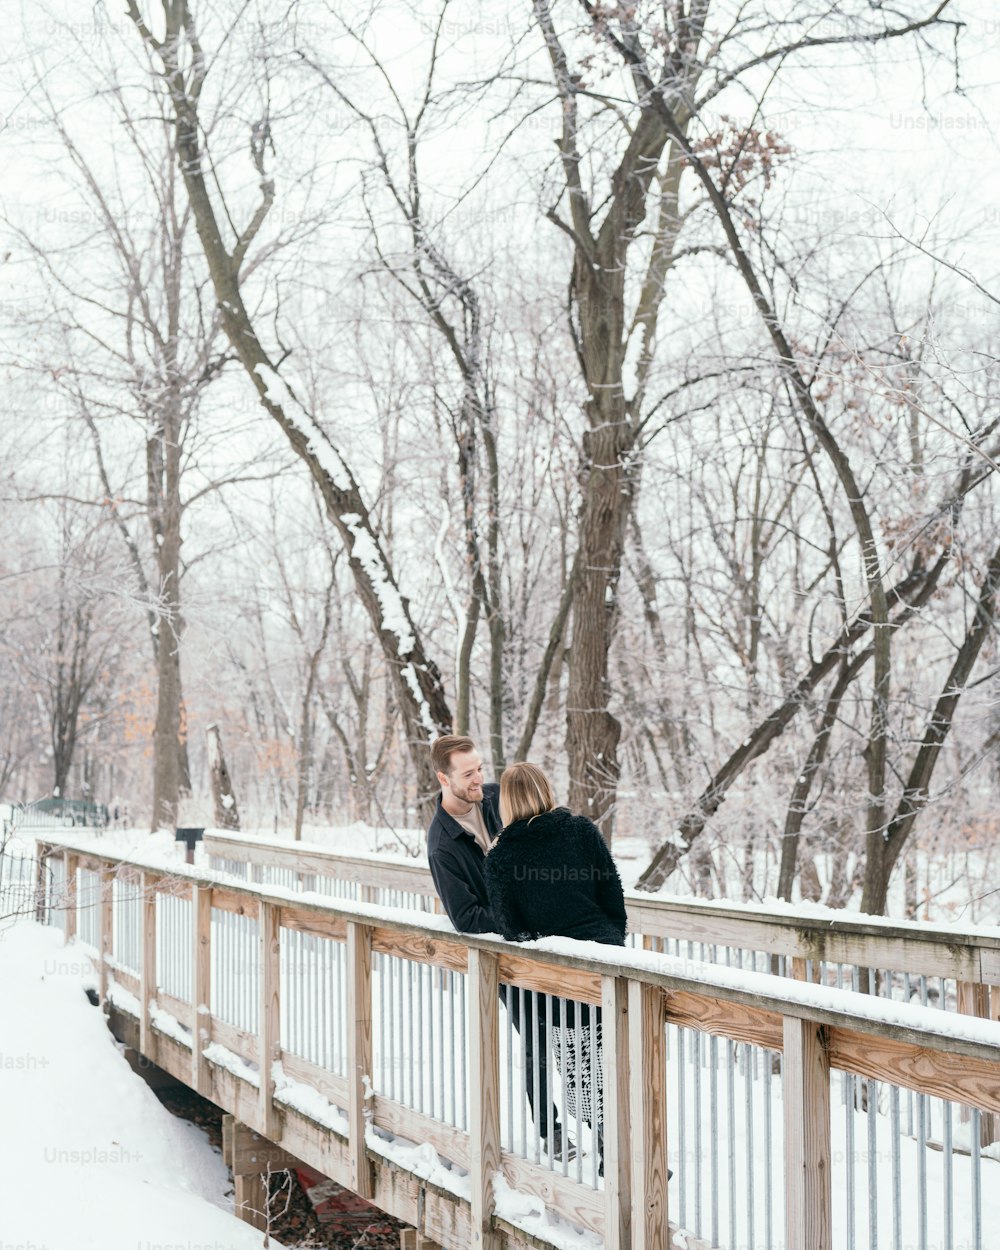 Zwei Personen stehen auf einer Brücke im Schnee